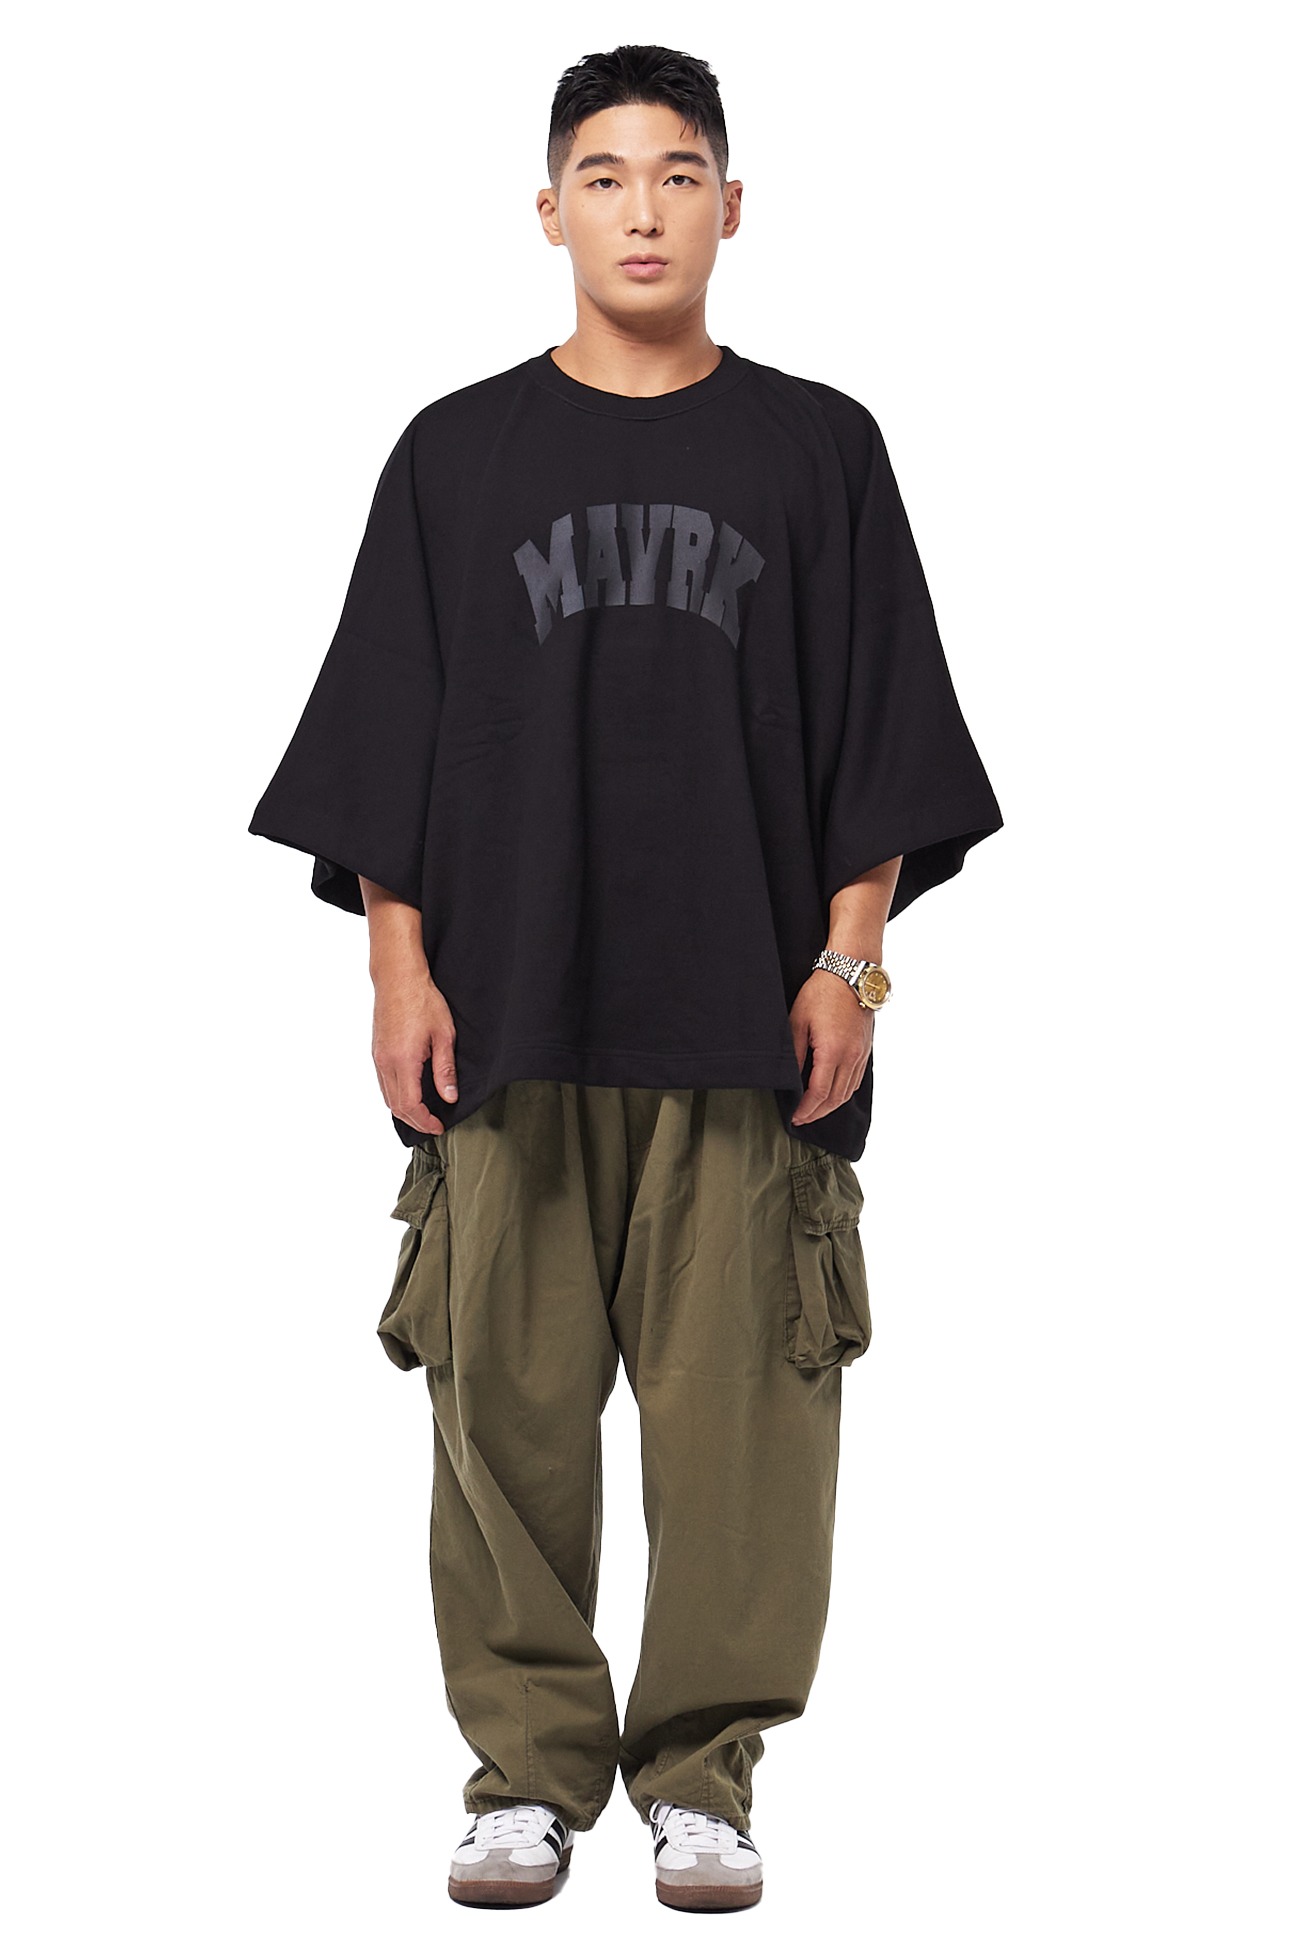 M 로고 오프 오버핏 7부 티셔츠 블랙